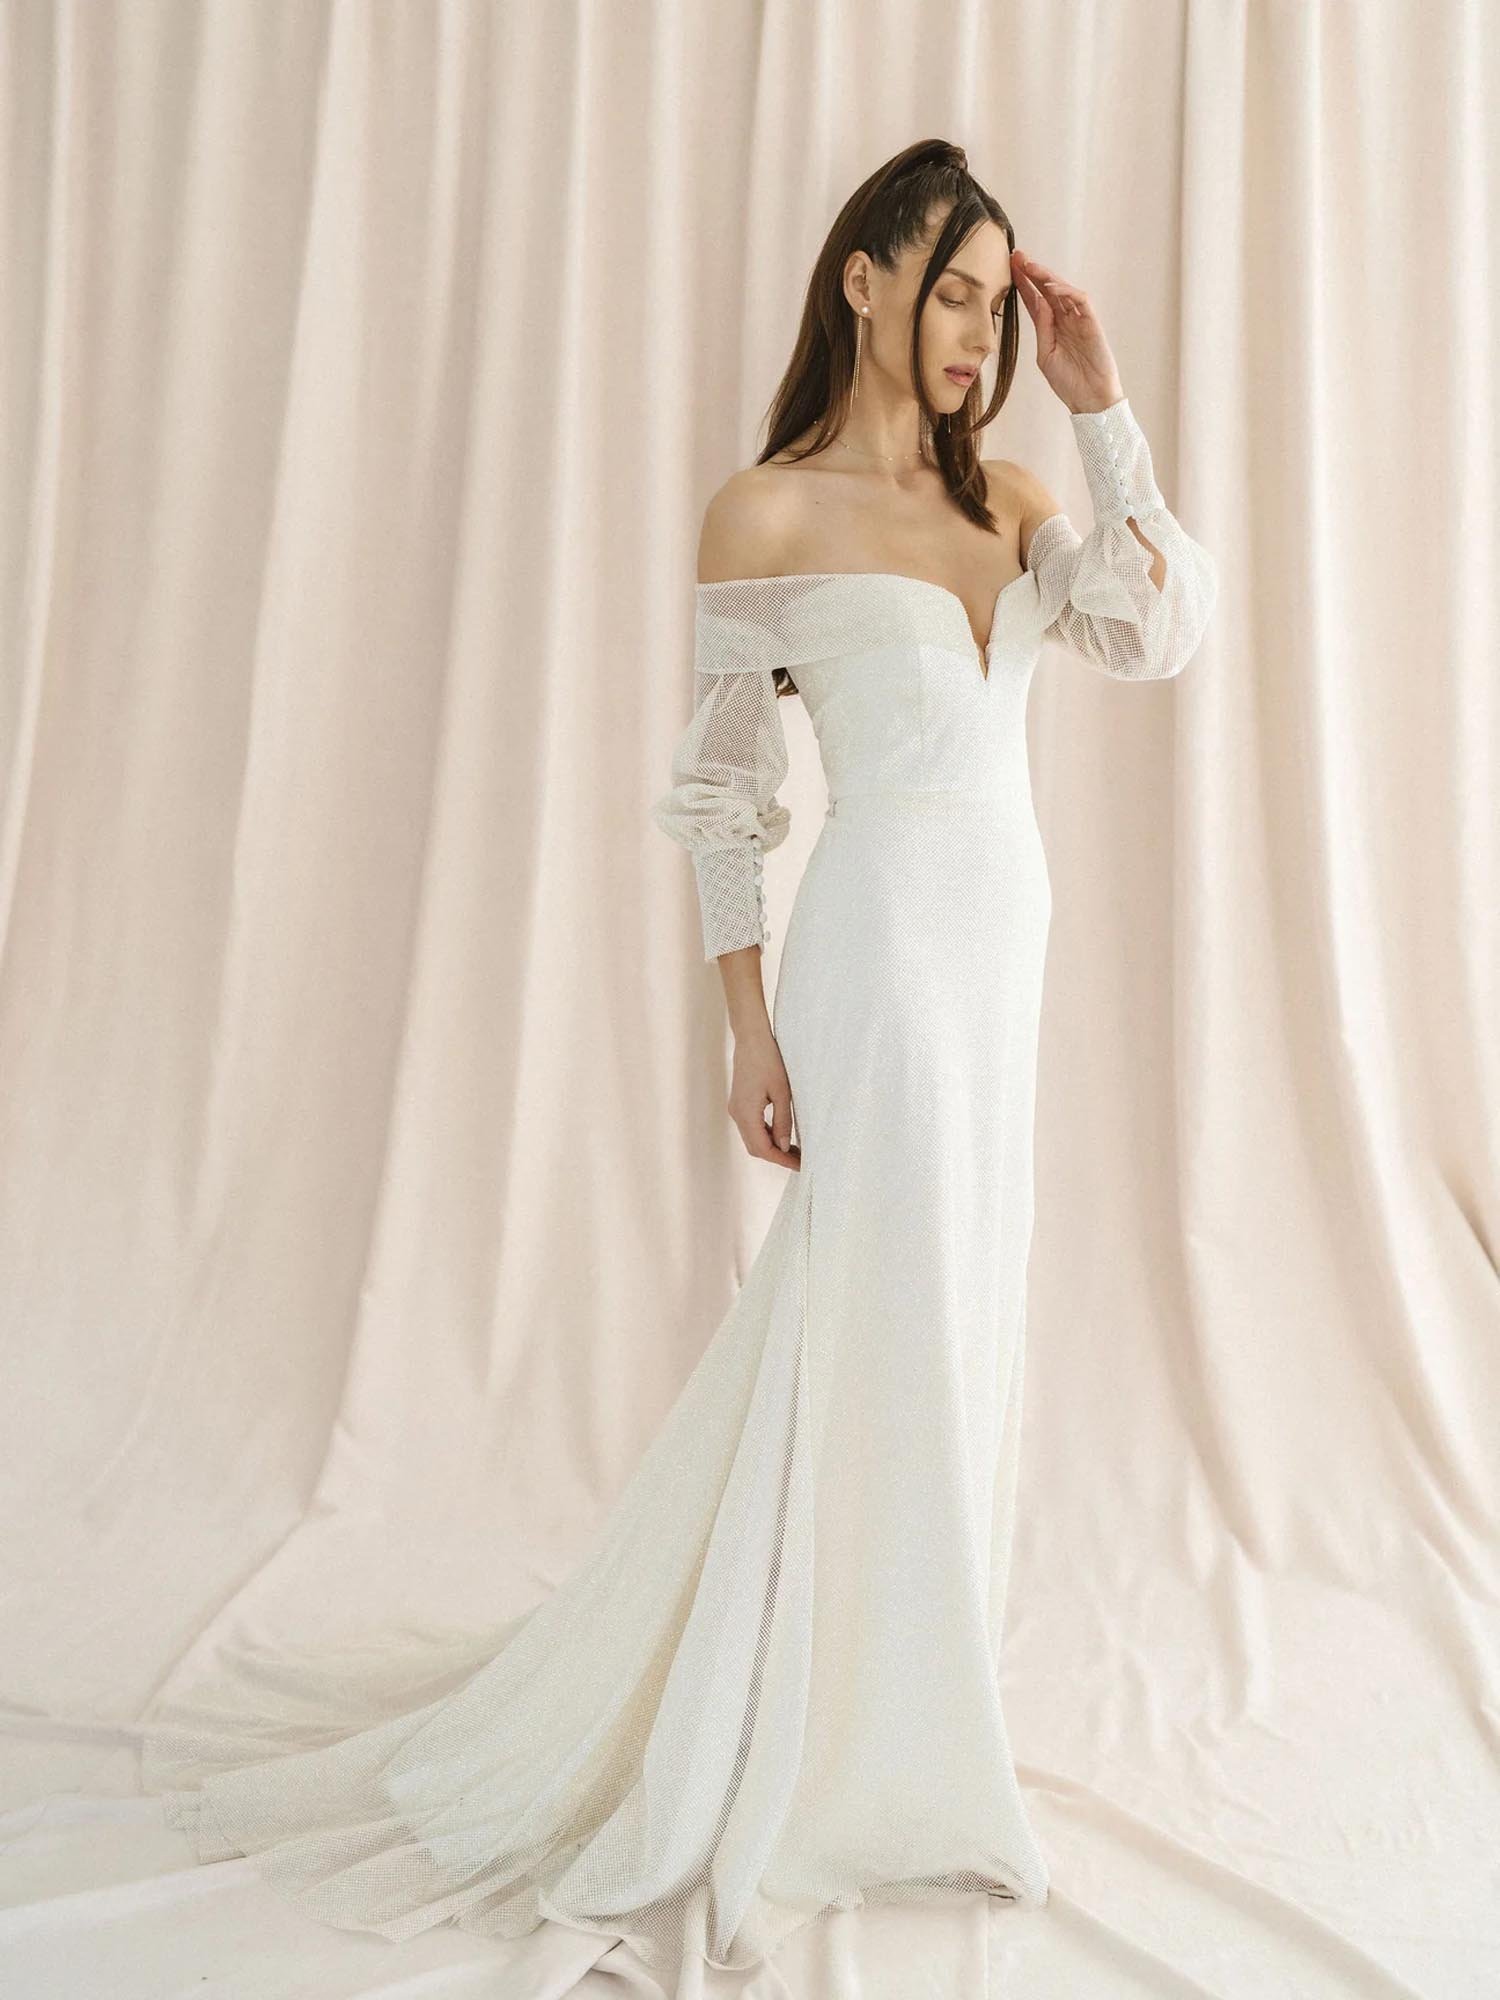 Laudae Bridal + Wedding Dresses｜a&bé bridal shop